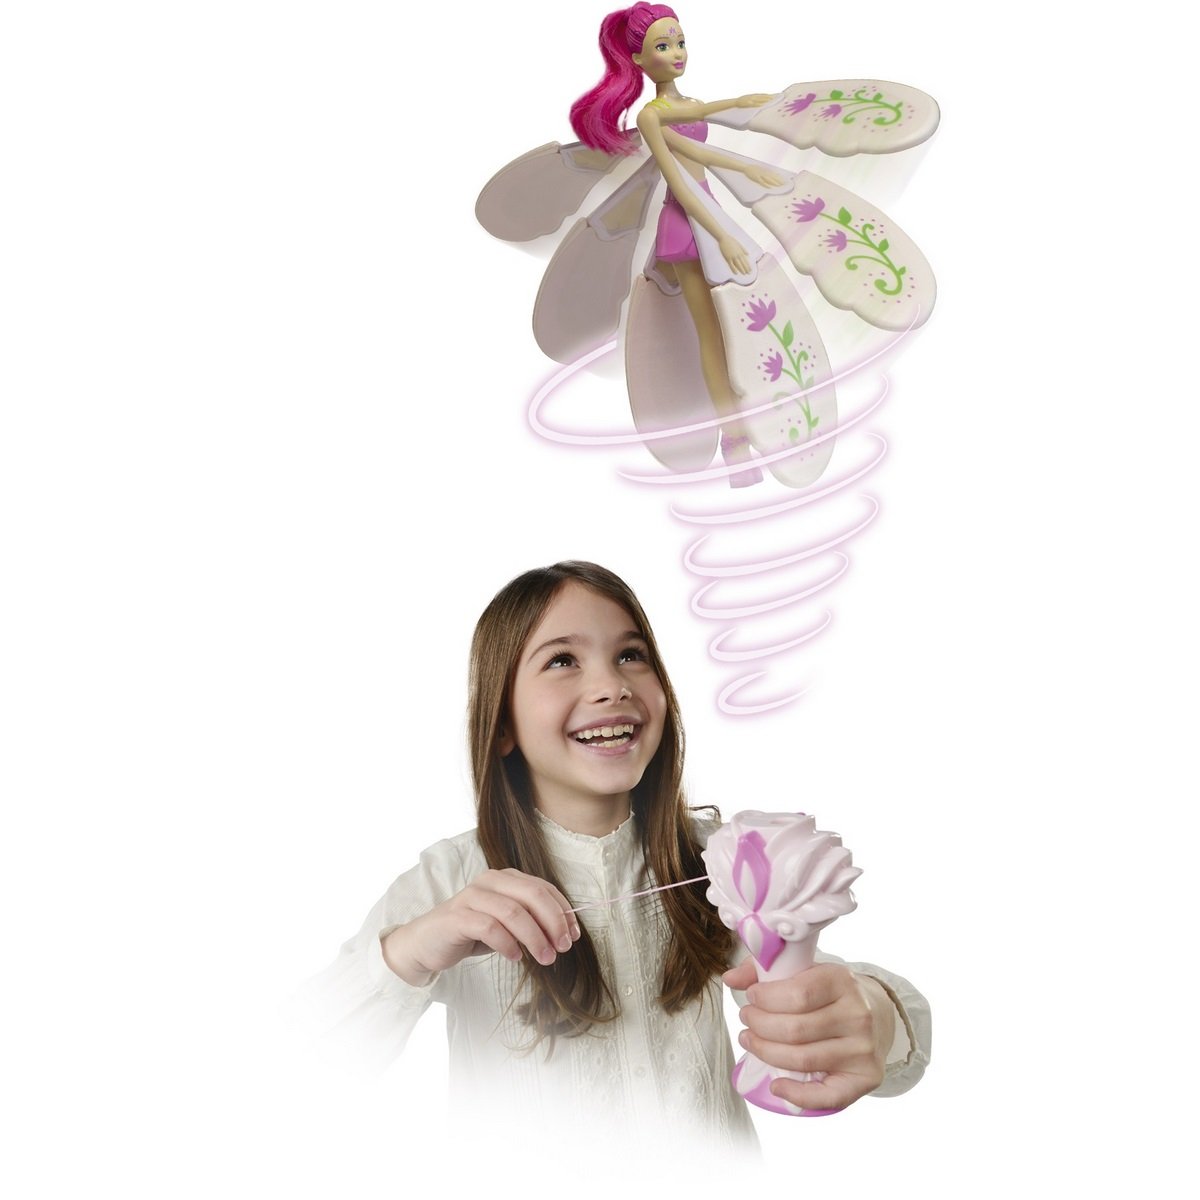 Poupée magique de fée volante, poupée de princesse volante radiocommandée,  jouets de drone de princesse, danseurs du ciel, poupées Pixie volantes